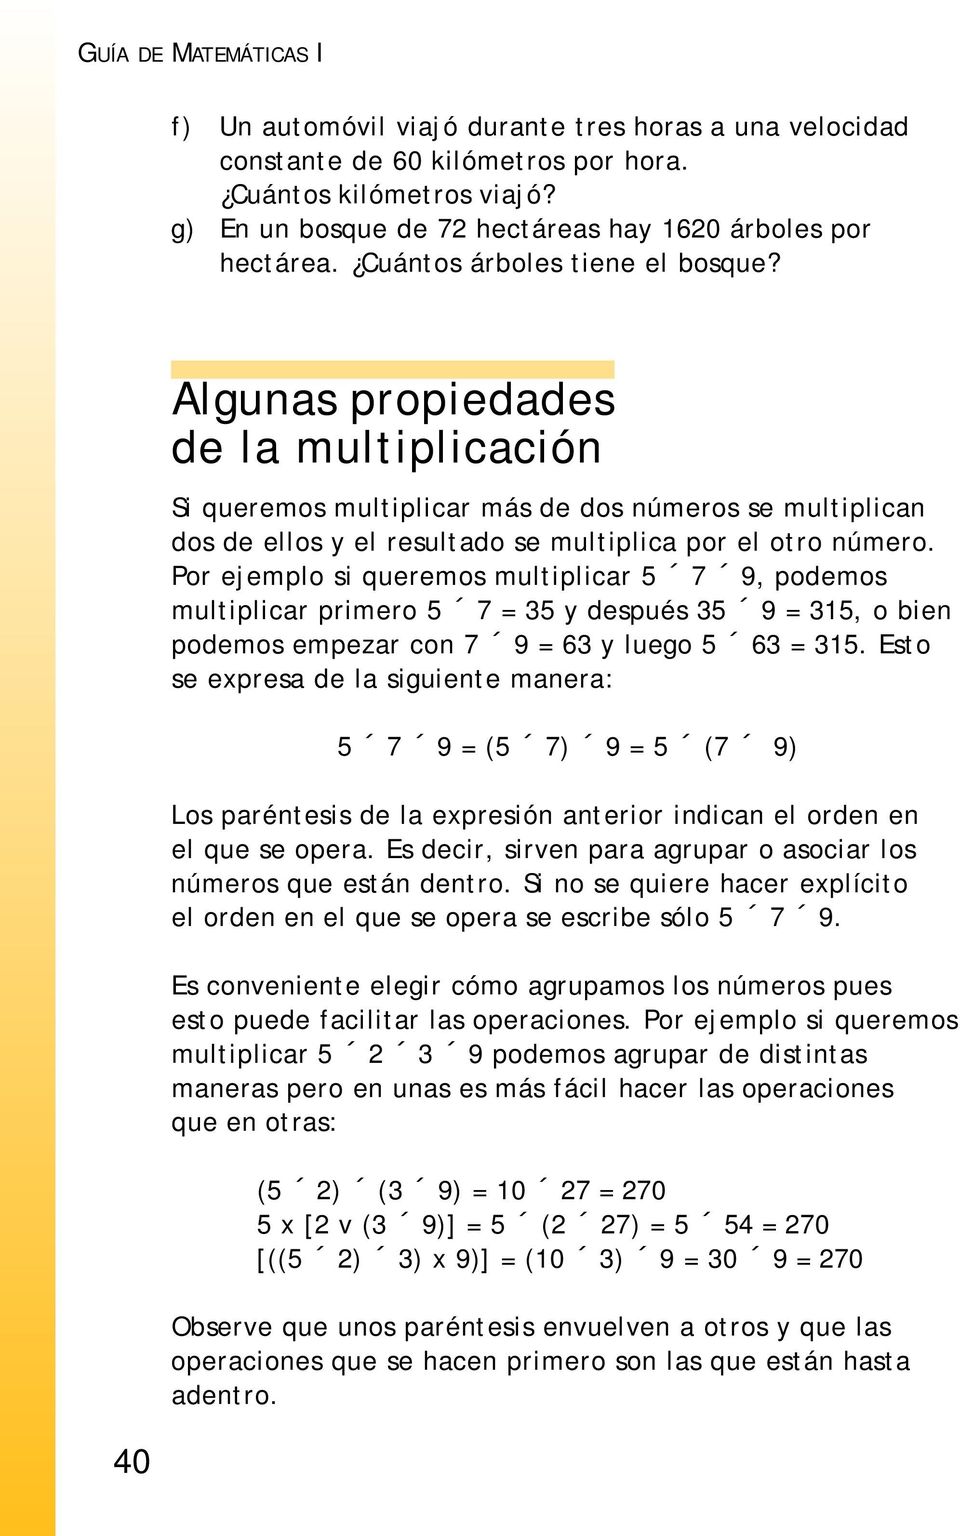 40 Algunas propiedades de la multiplicación Si queremos multiplicar más de dos números se multiplican dos de ellos y el resultado se multiplica por el otro número.